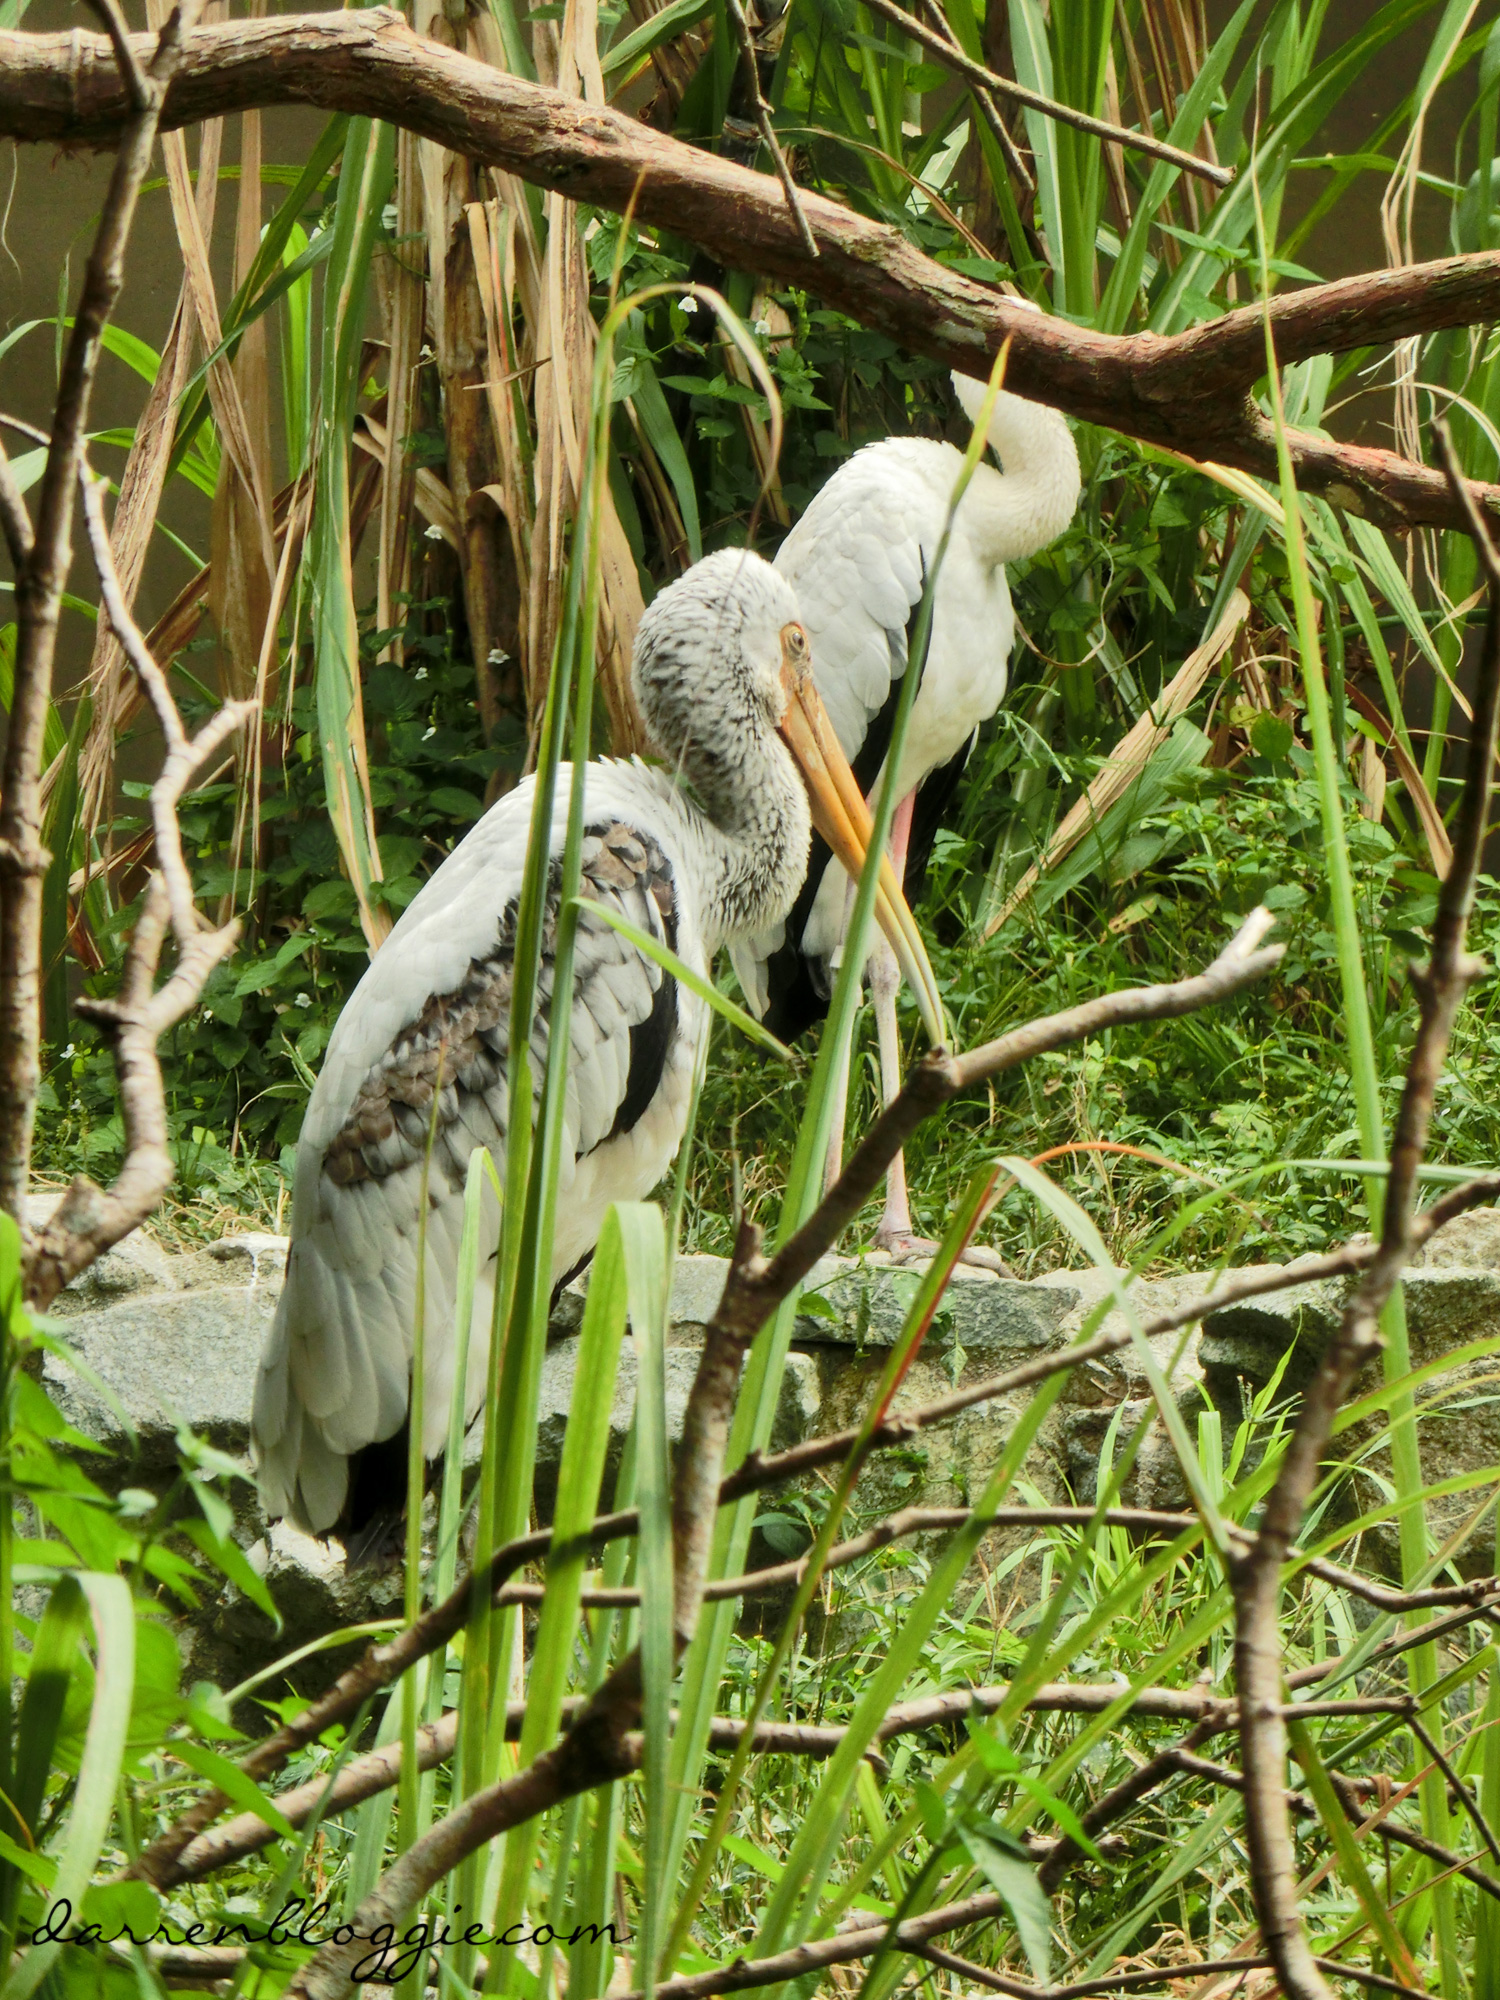 Meet Jia Jia and Kai Kai at the River Safari